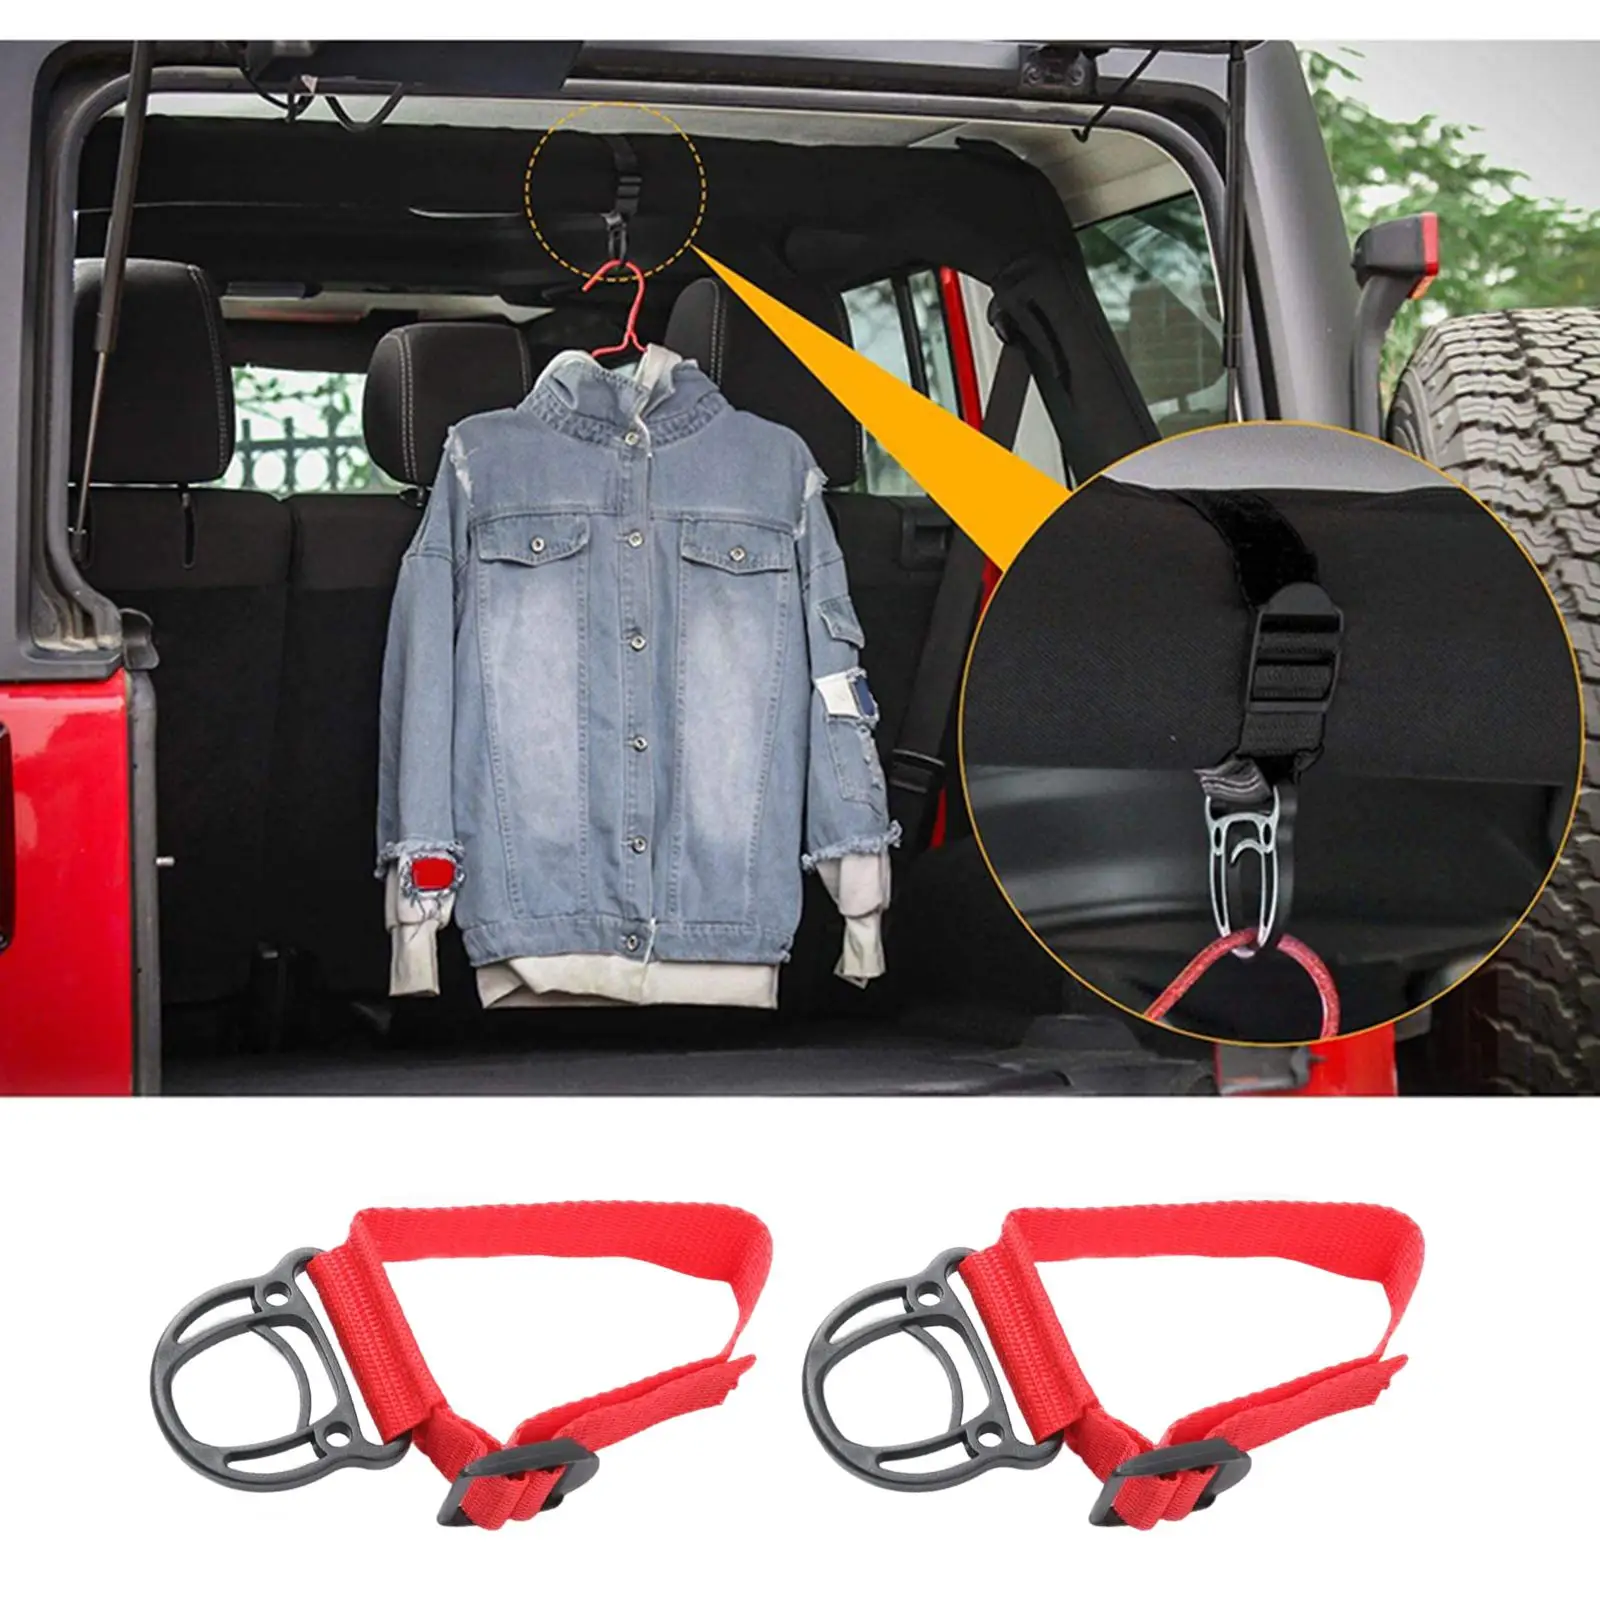 2Pcs Clothes Hook Accessories Roll Bar Coat Jacket Hanger for Car Suvs Camping